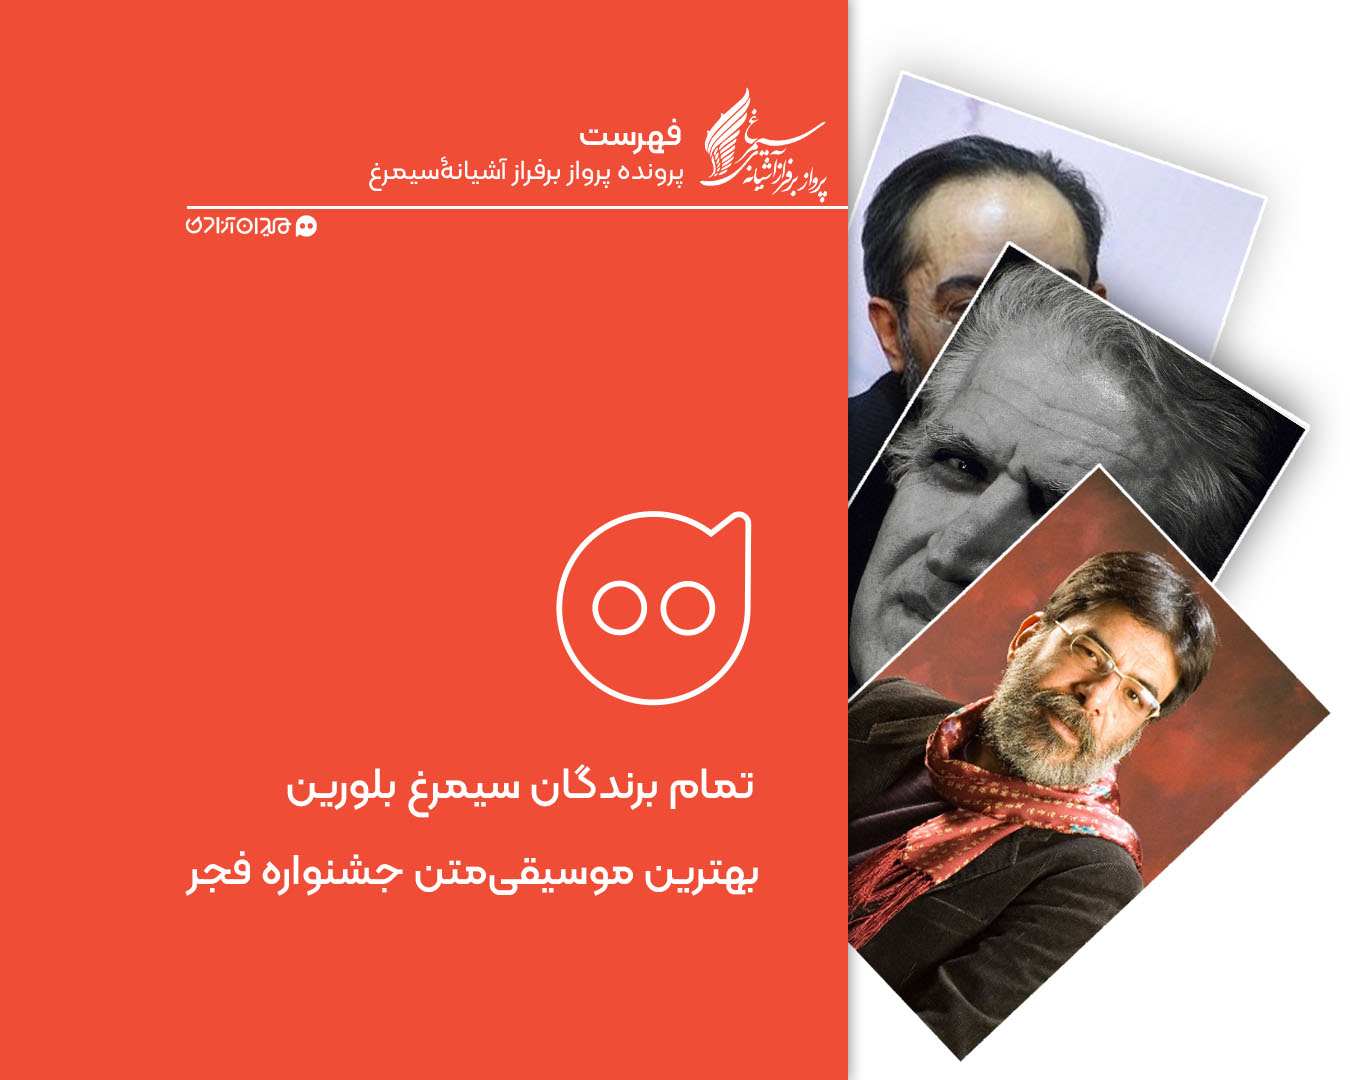 فهرست: تمام برندگان سیمرغ بلورین بهترین موسیقی متن جشنواره فیلم فجر از ابتدا تاکنون